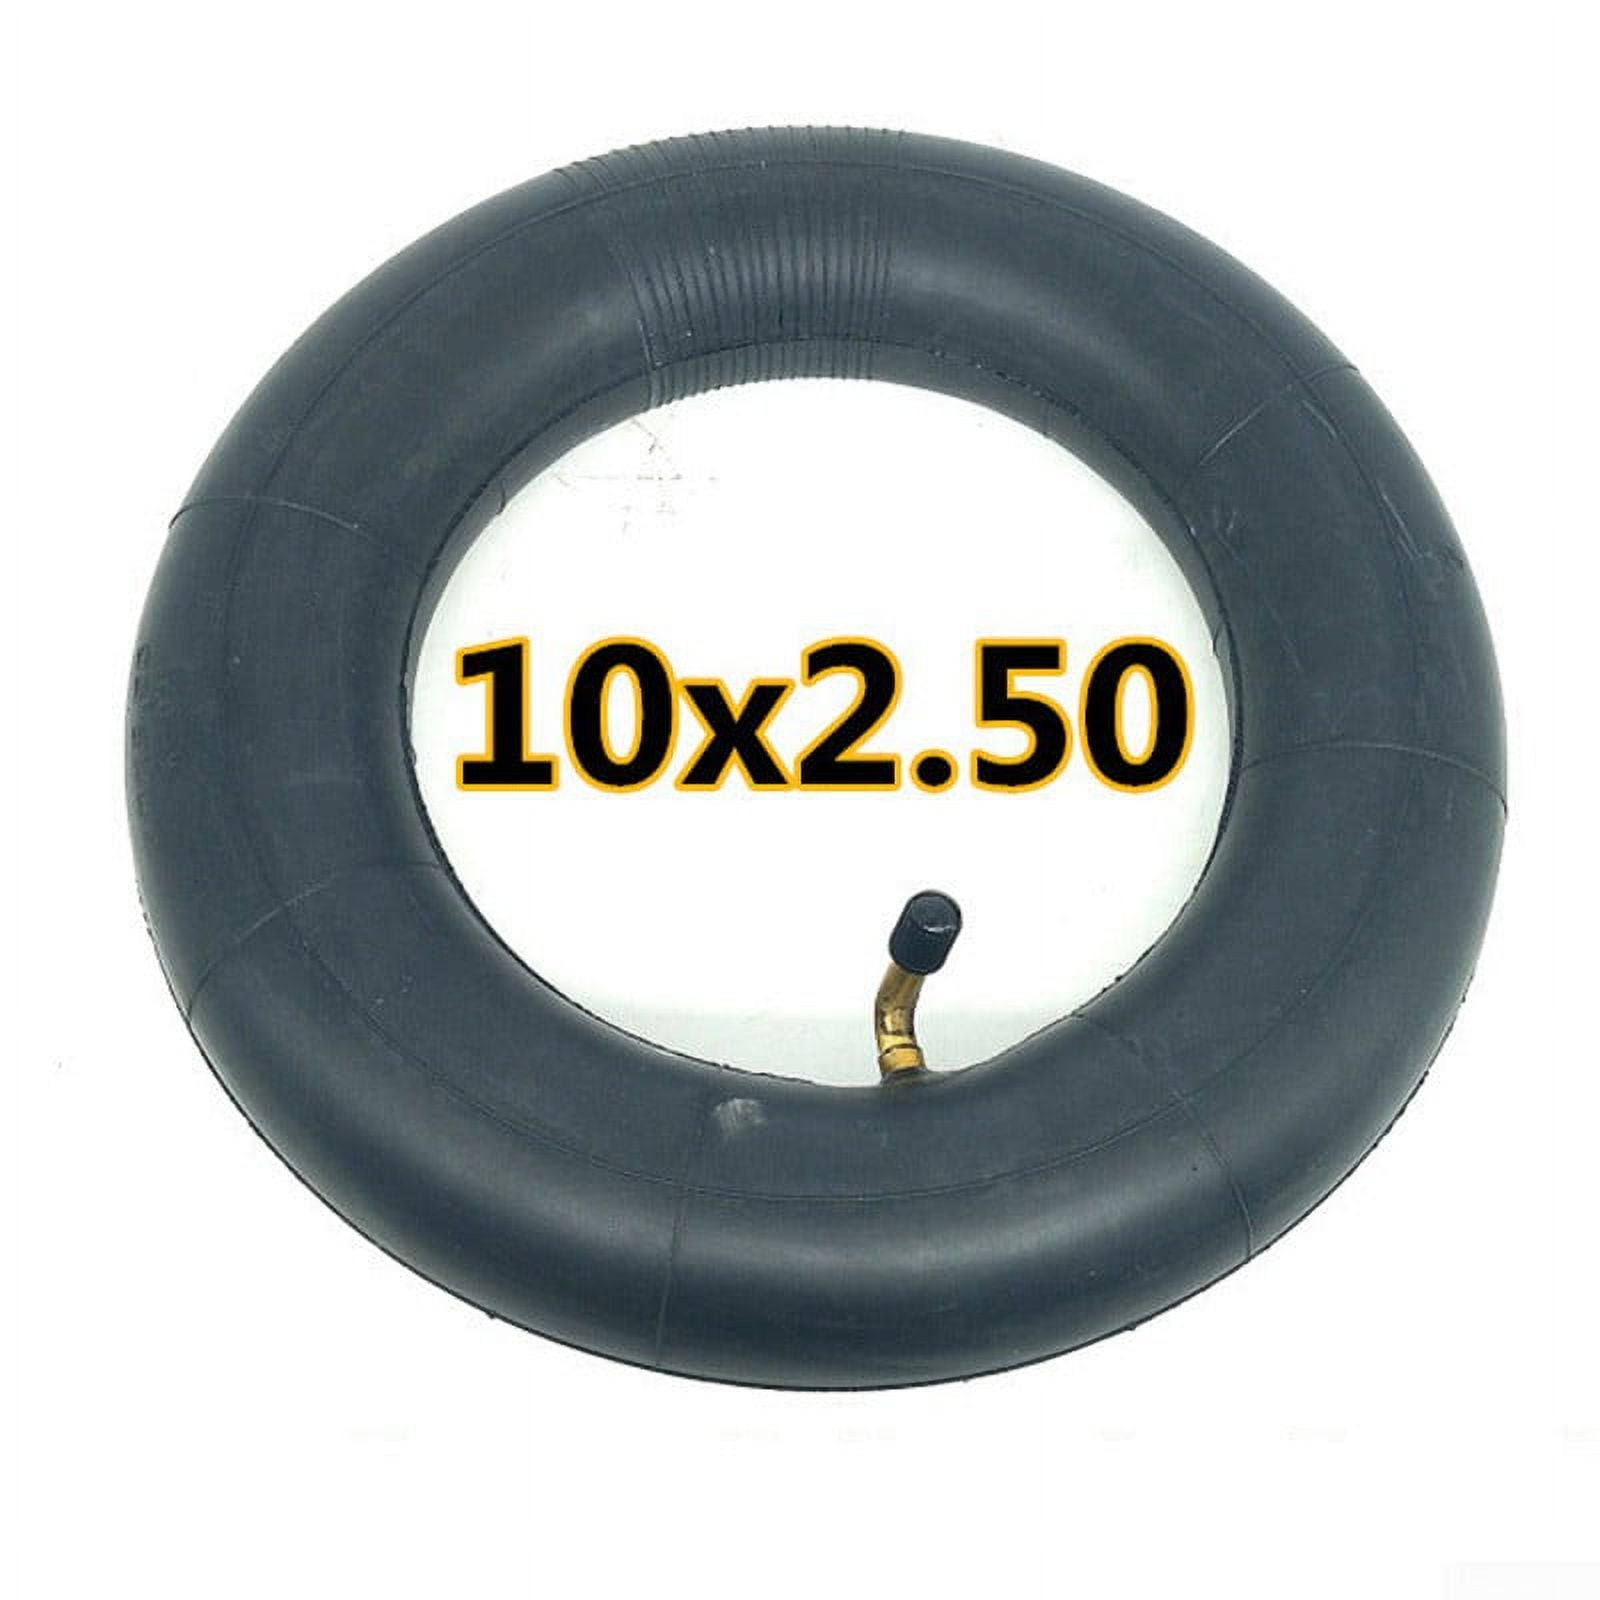  GREHUA 10x2.50 10 Inch Inner Tube for Smart Self